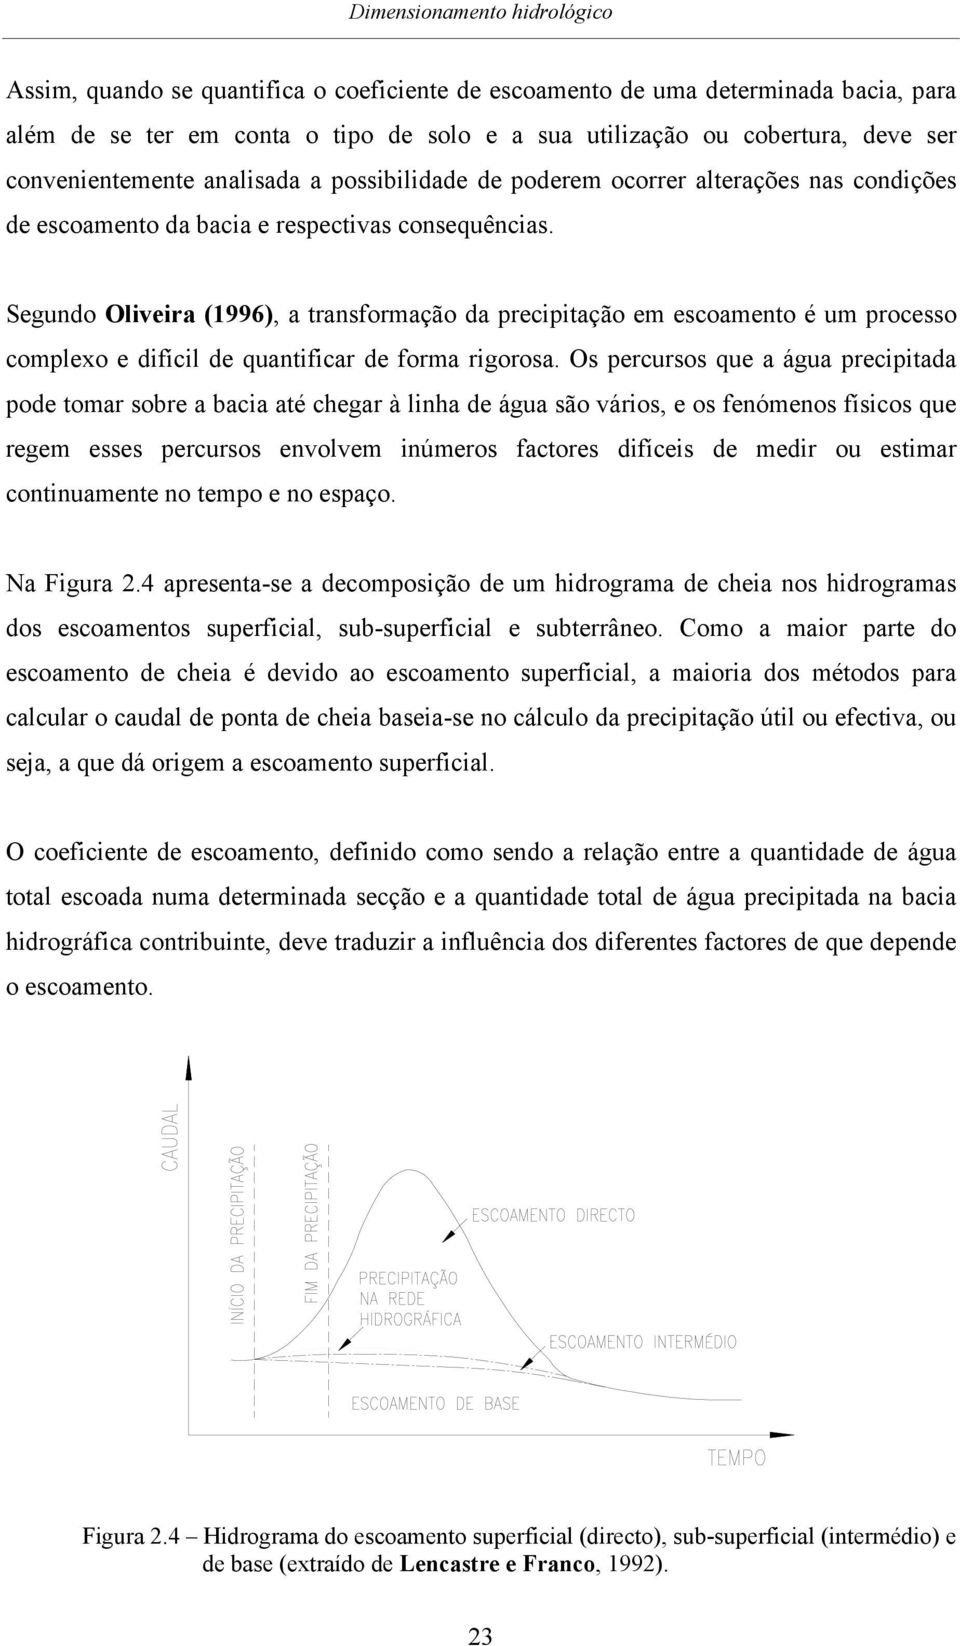 Segundo Oliveira (1996), a transformação da precipitação em escoamento é um processo complexo e difícil de quantificar de forma rigorosa.